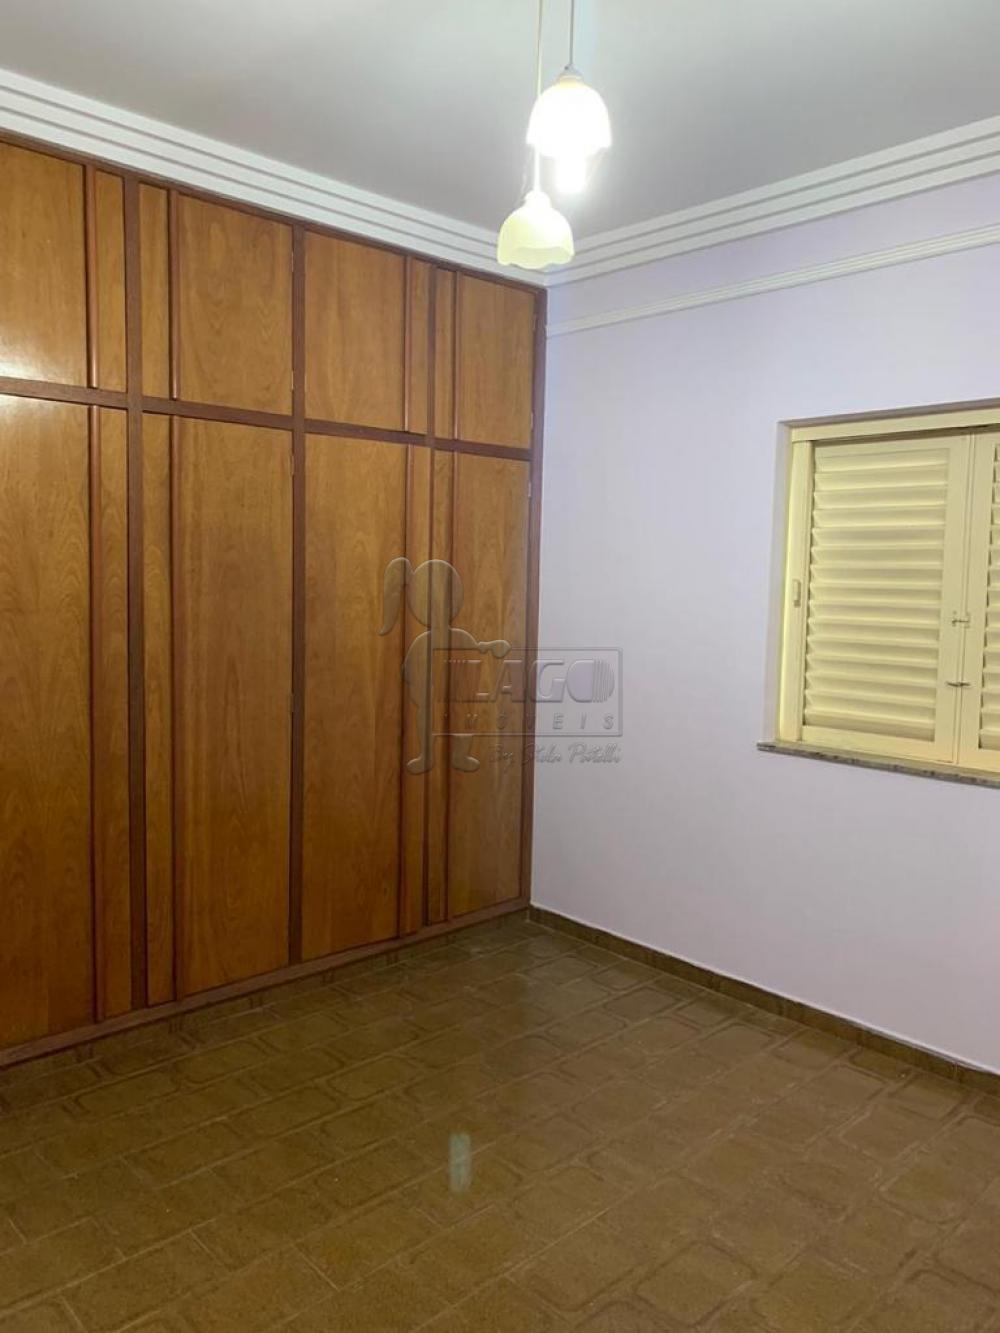 Comprar Casa / Padrão em Ribeirão Preto R$ 480.000,00 - Foto 12